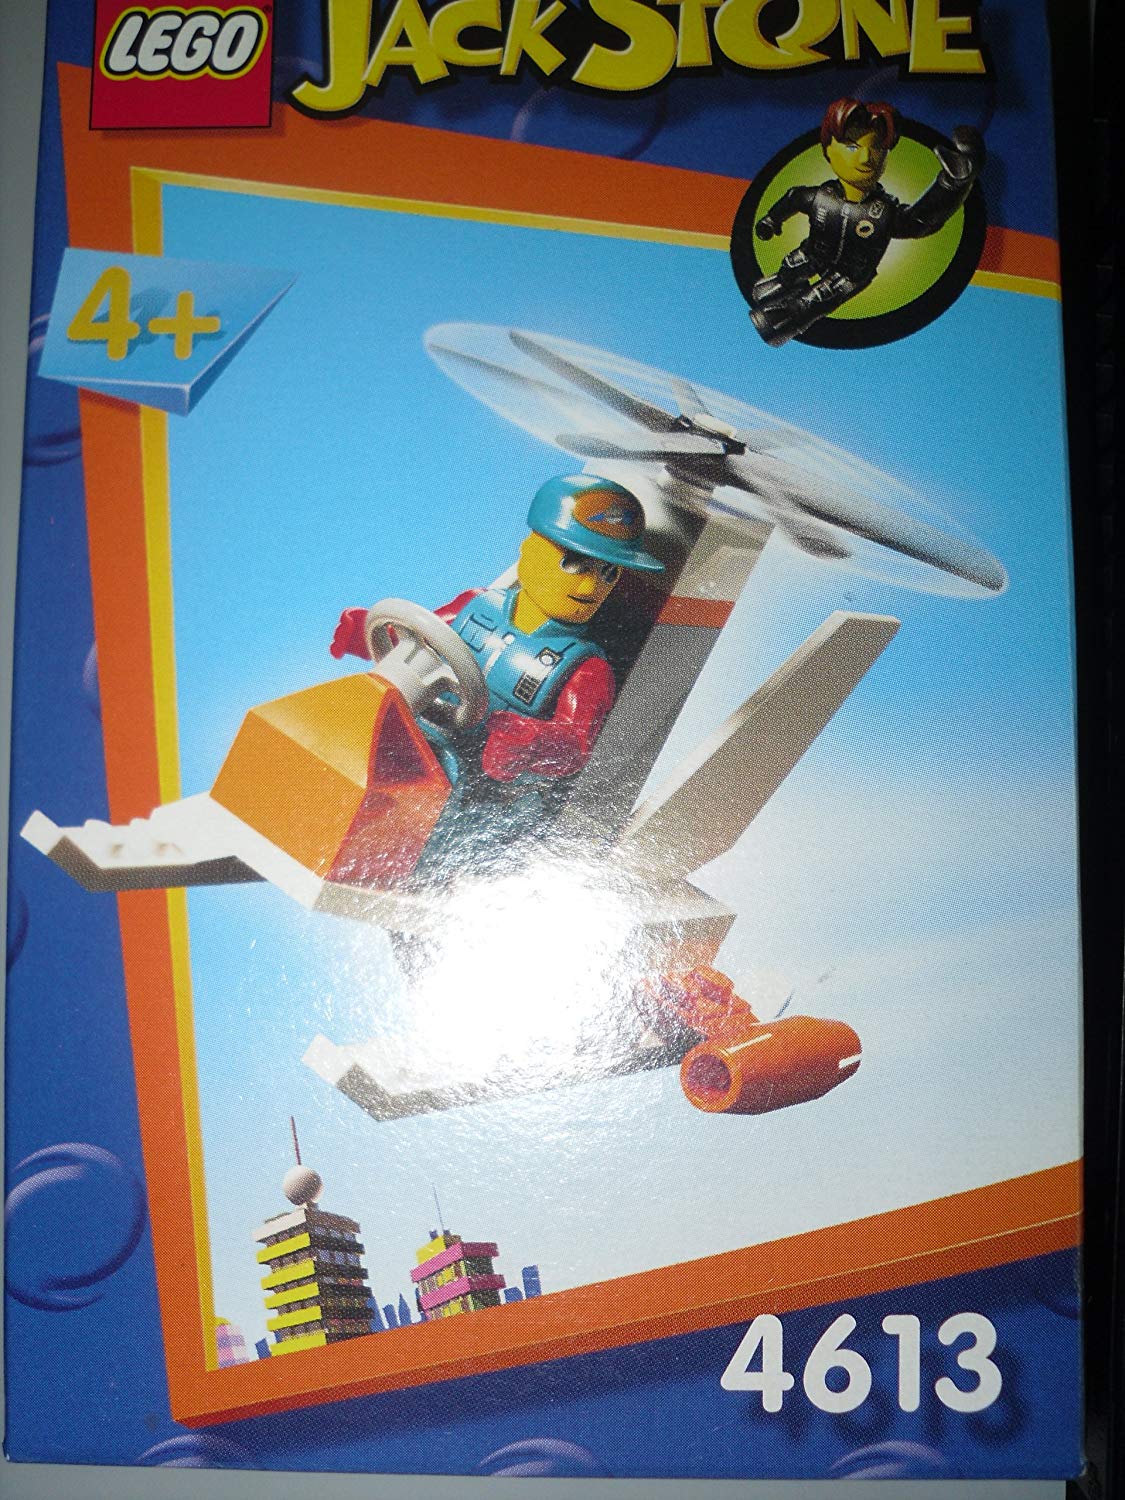 Lego Jack Stone 4613 - Turbo Chopper